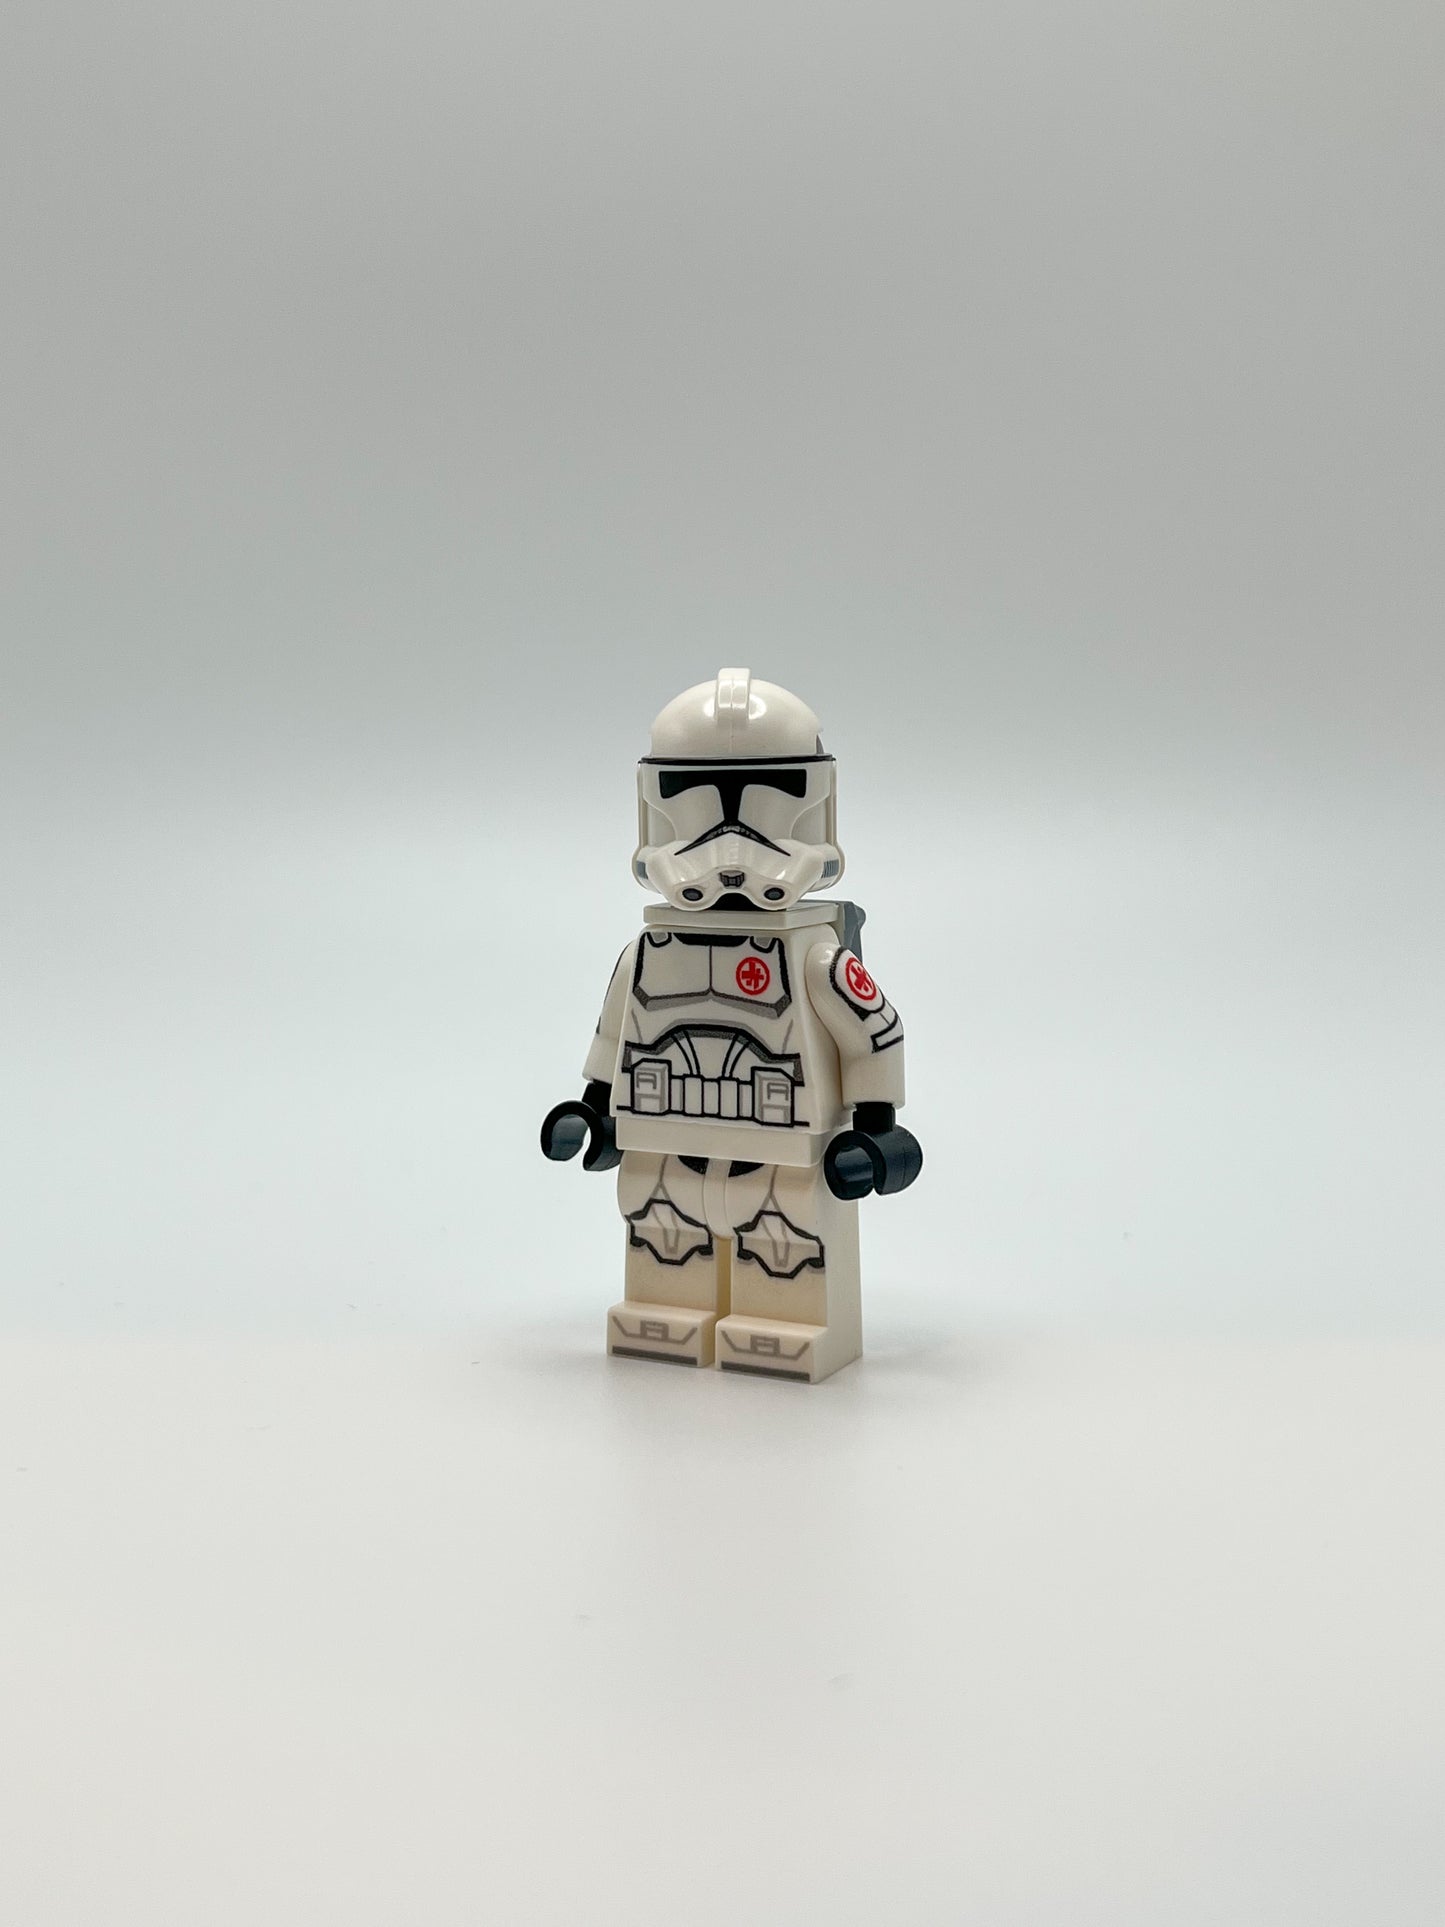 Printed Custom LEGO® Star Wars medic grunt with printed medic backpack